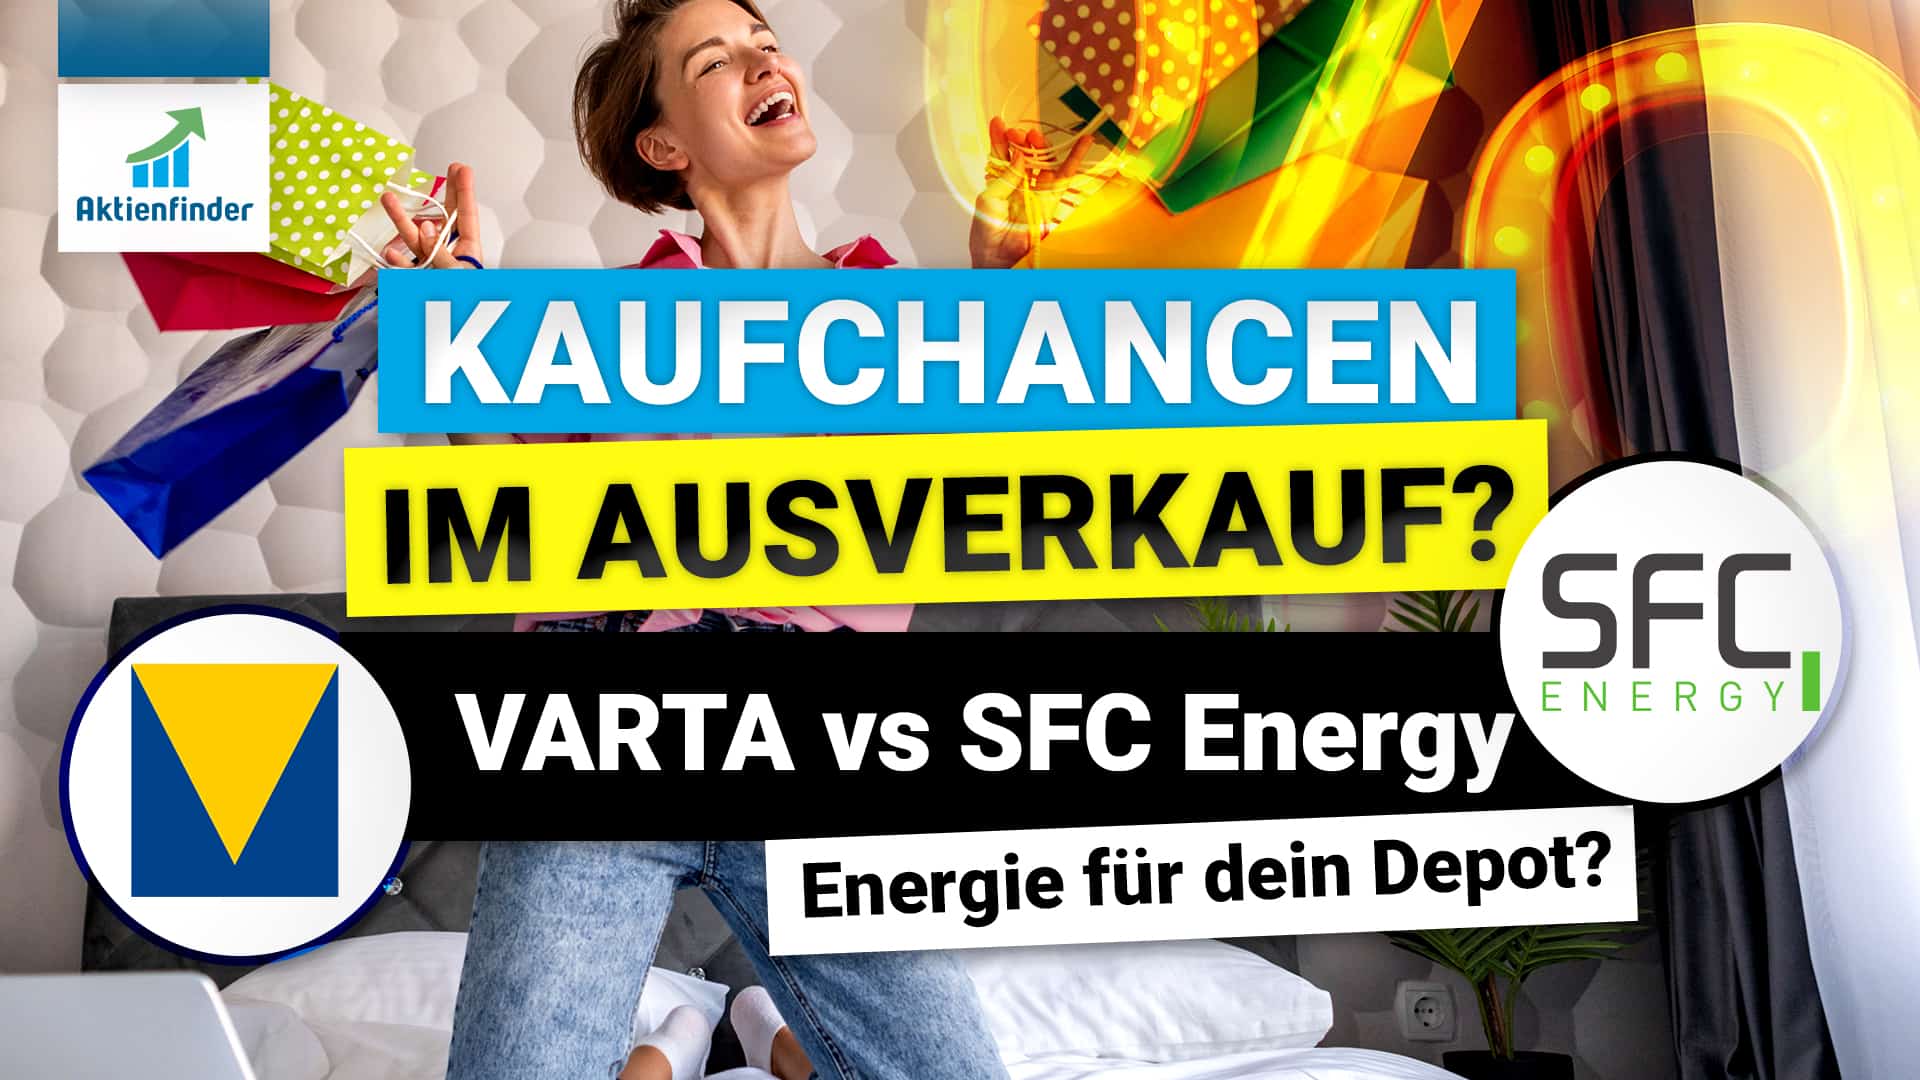 Kaufchancen im Ausverkauf – Varta und SFC Energy - Energie für